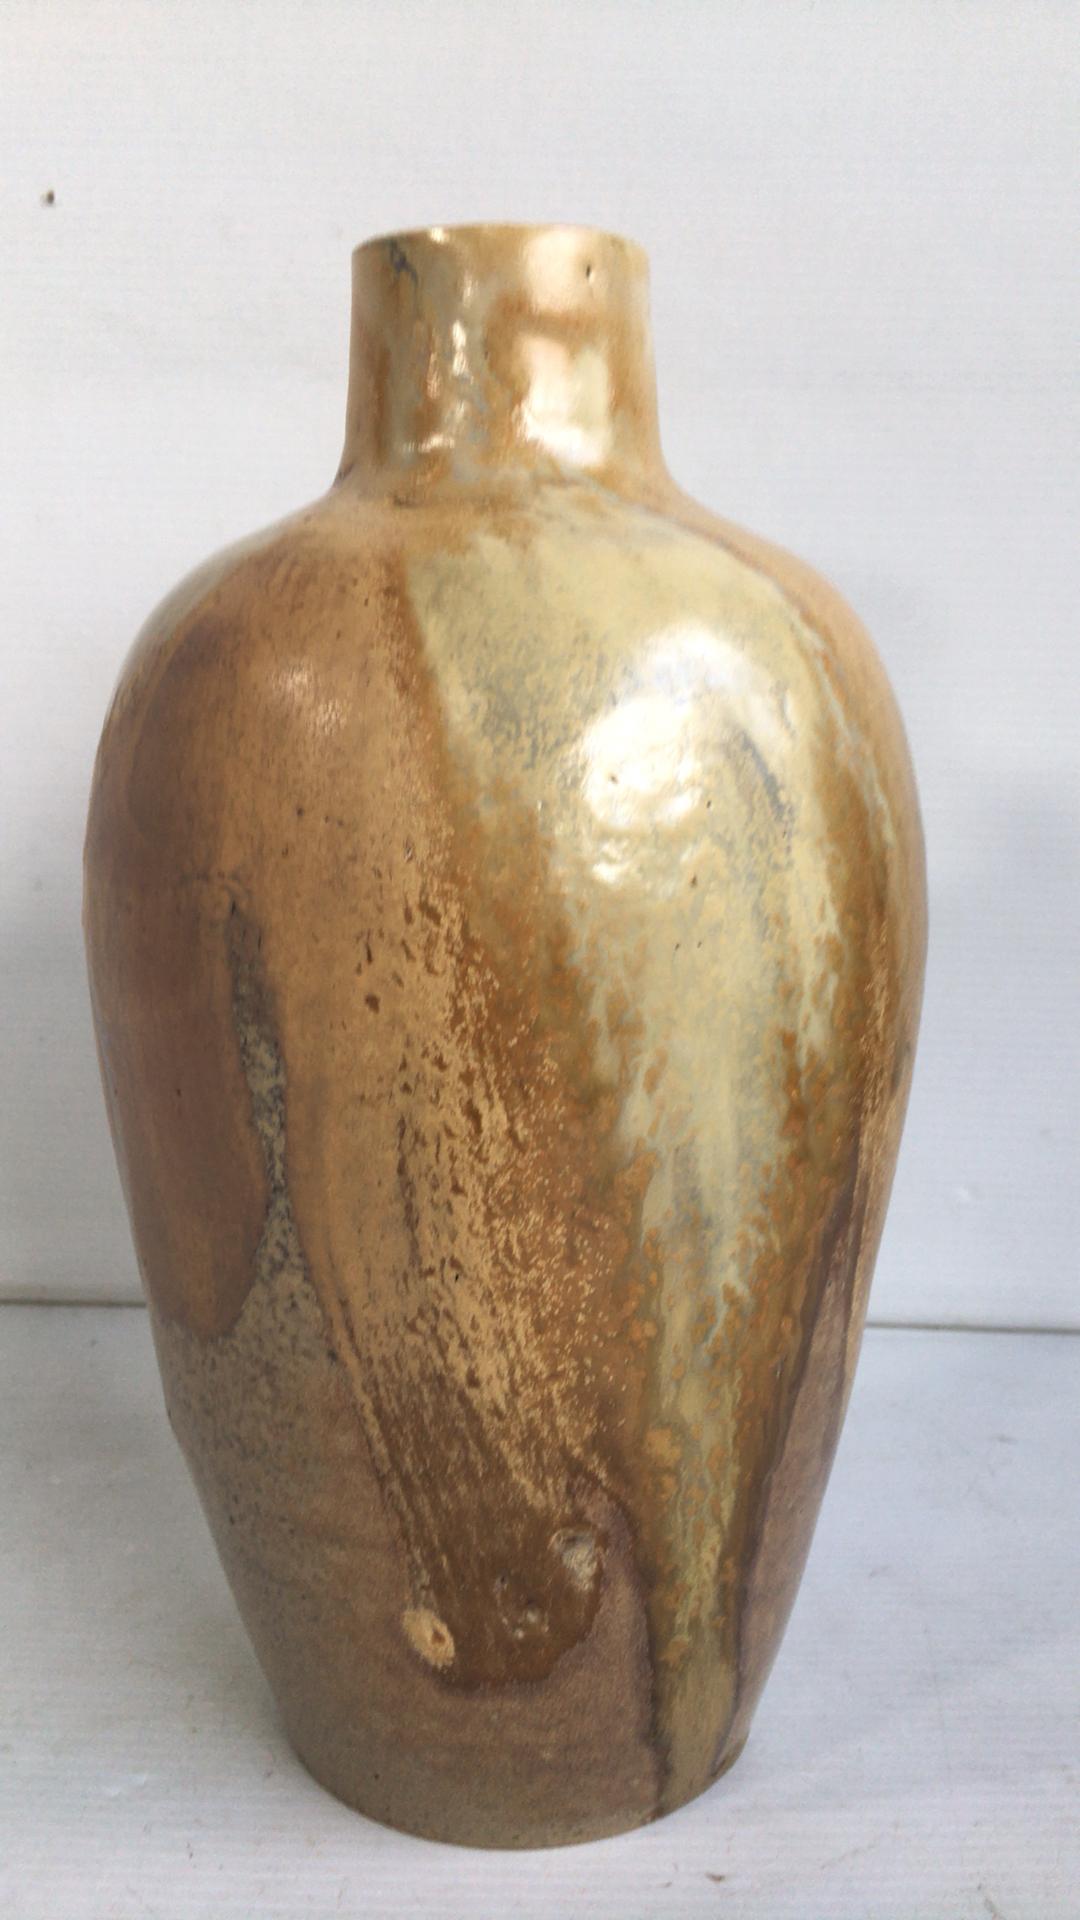 Art Deco Keramik Vase möglicherweise Delaherche um 1930.
  